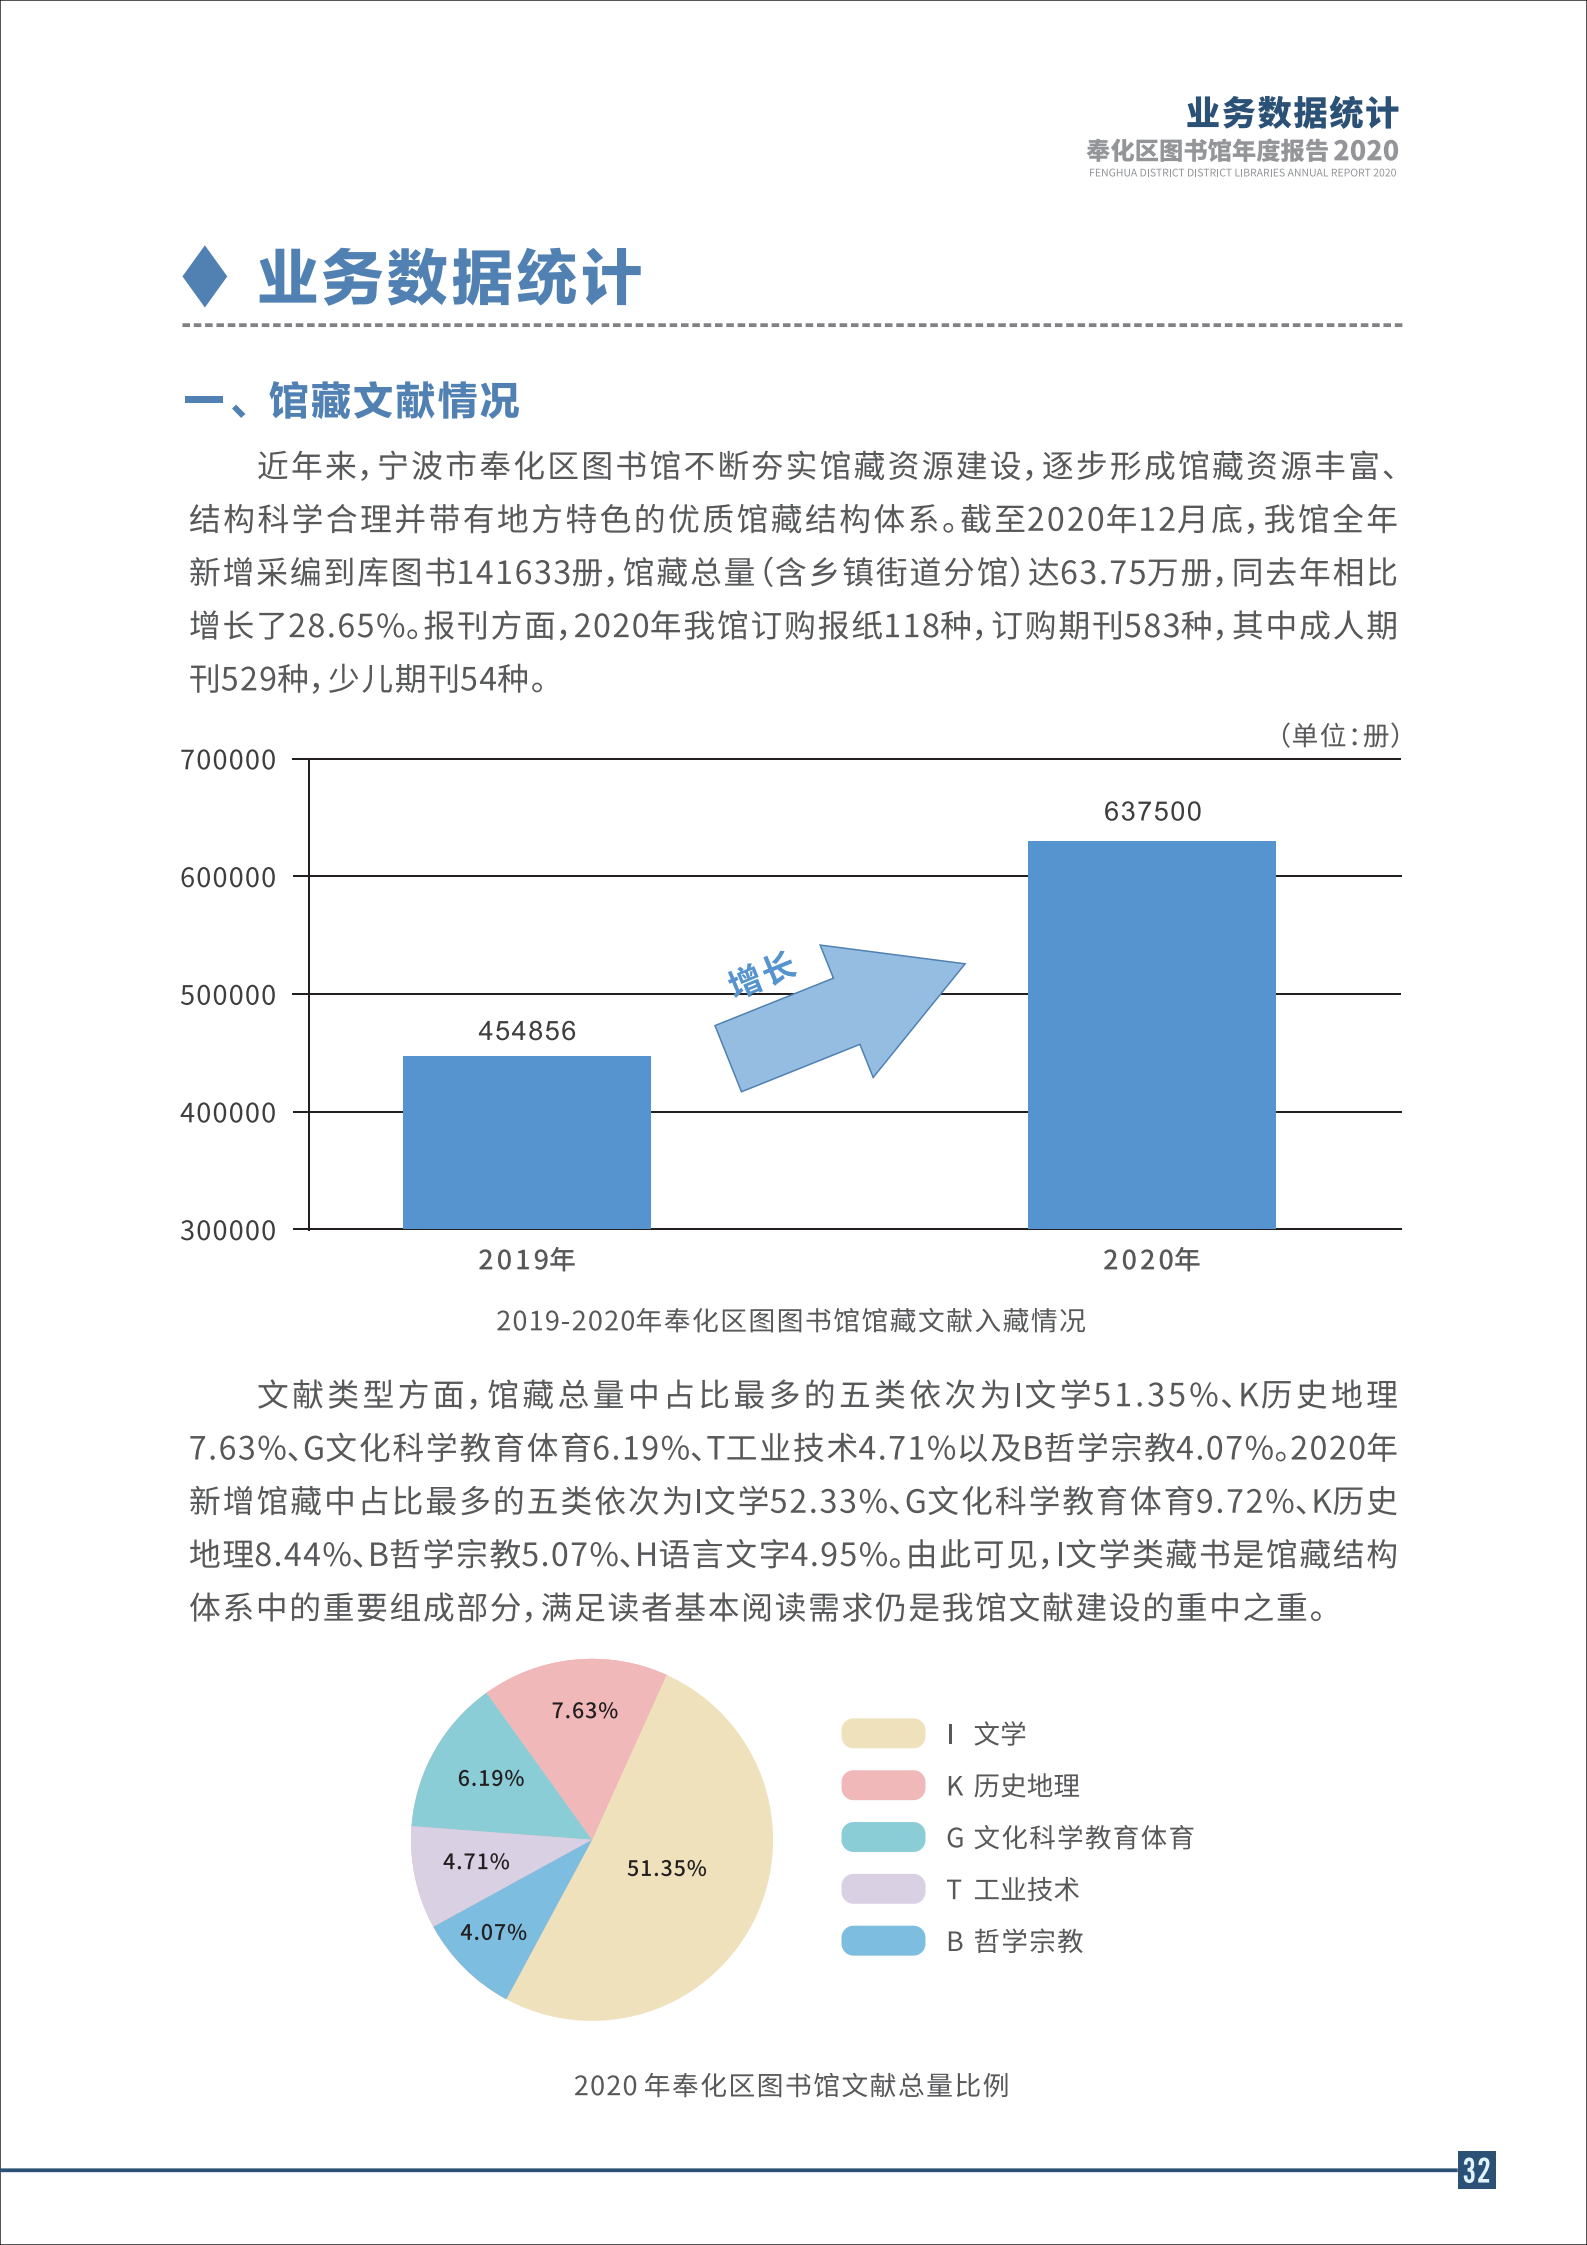 宁波市奉化区图书馆2020年年度报告 终稿_32.png